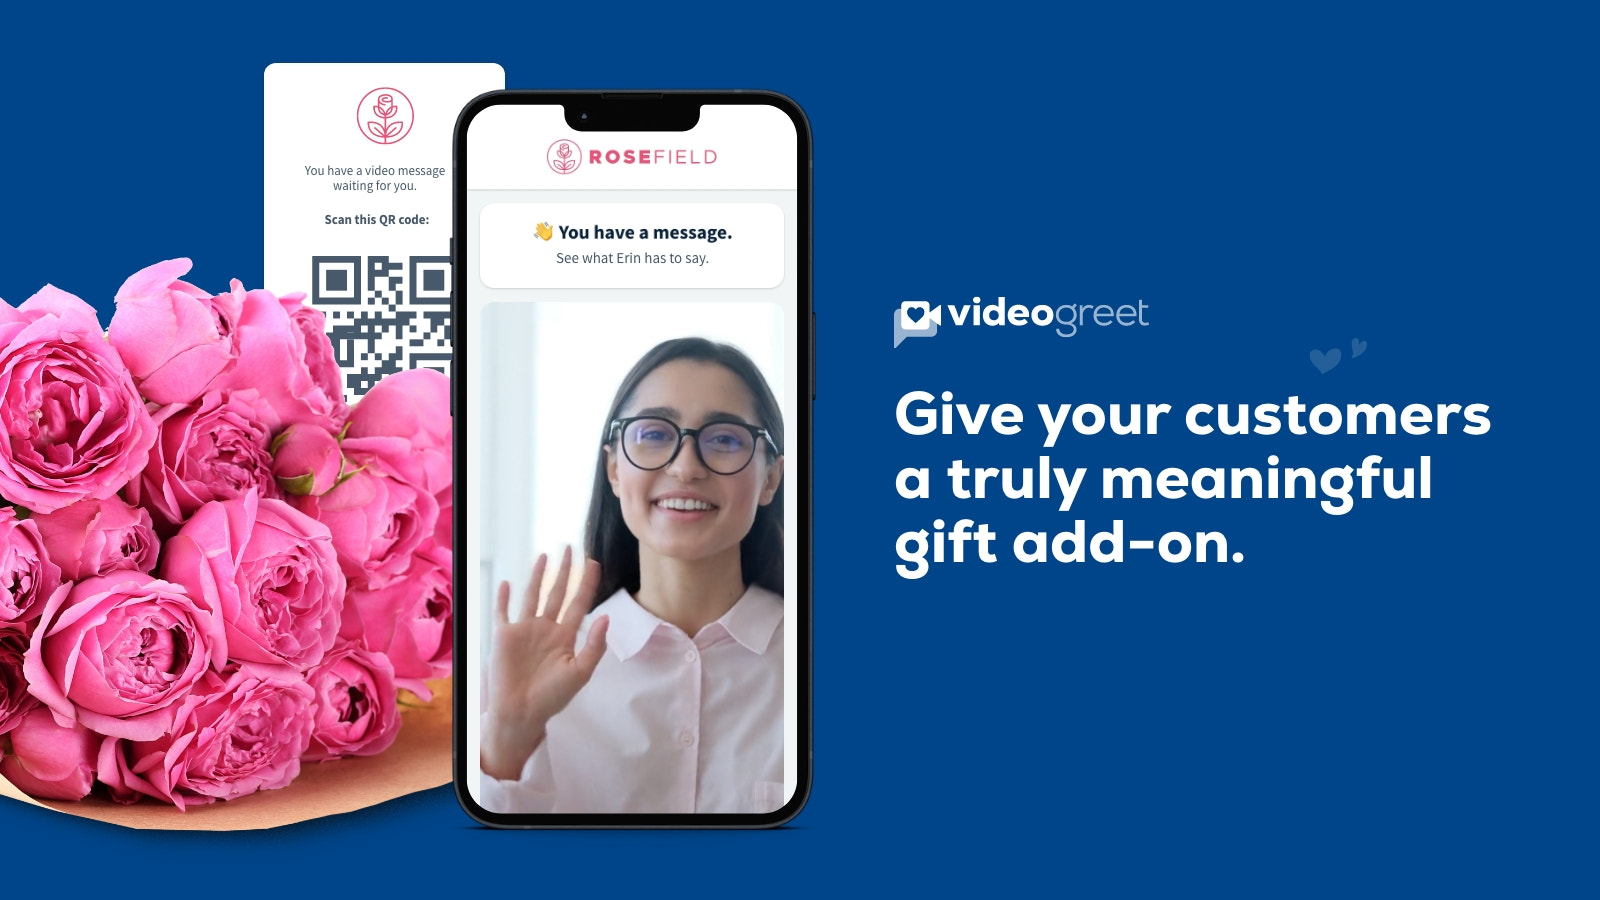 Lad kunder tilføje video hilsner til ordrer som en gave tilføjelse.